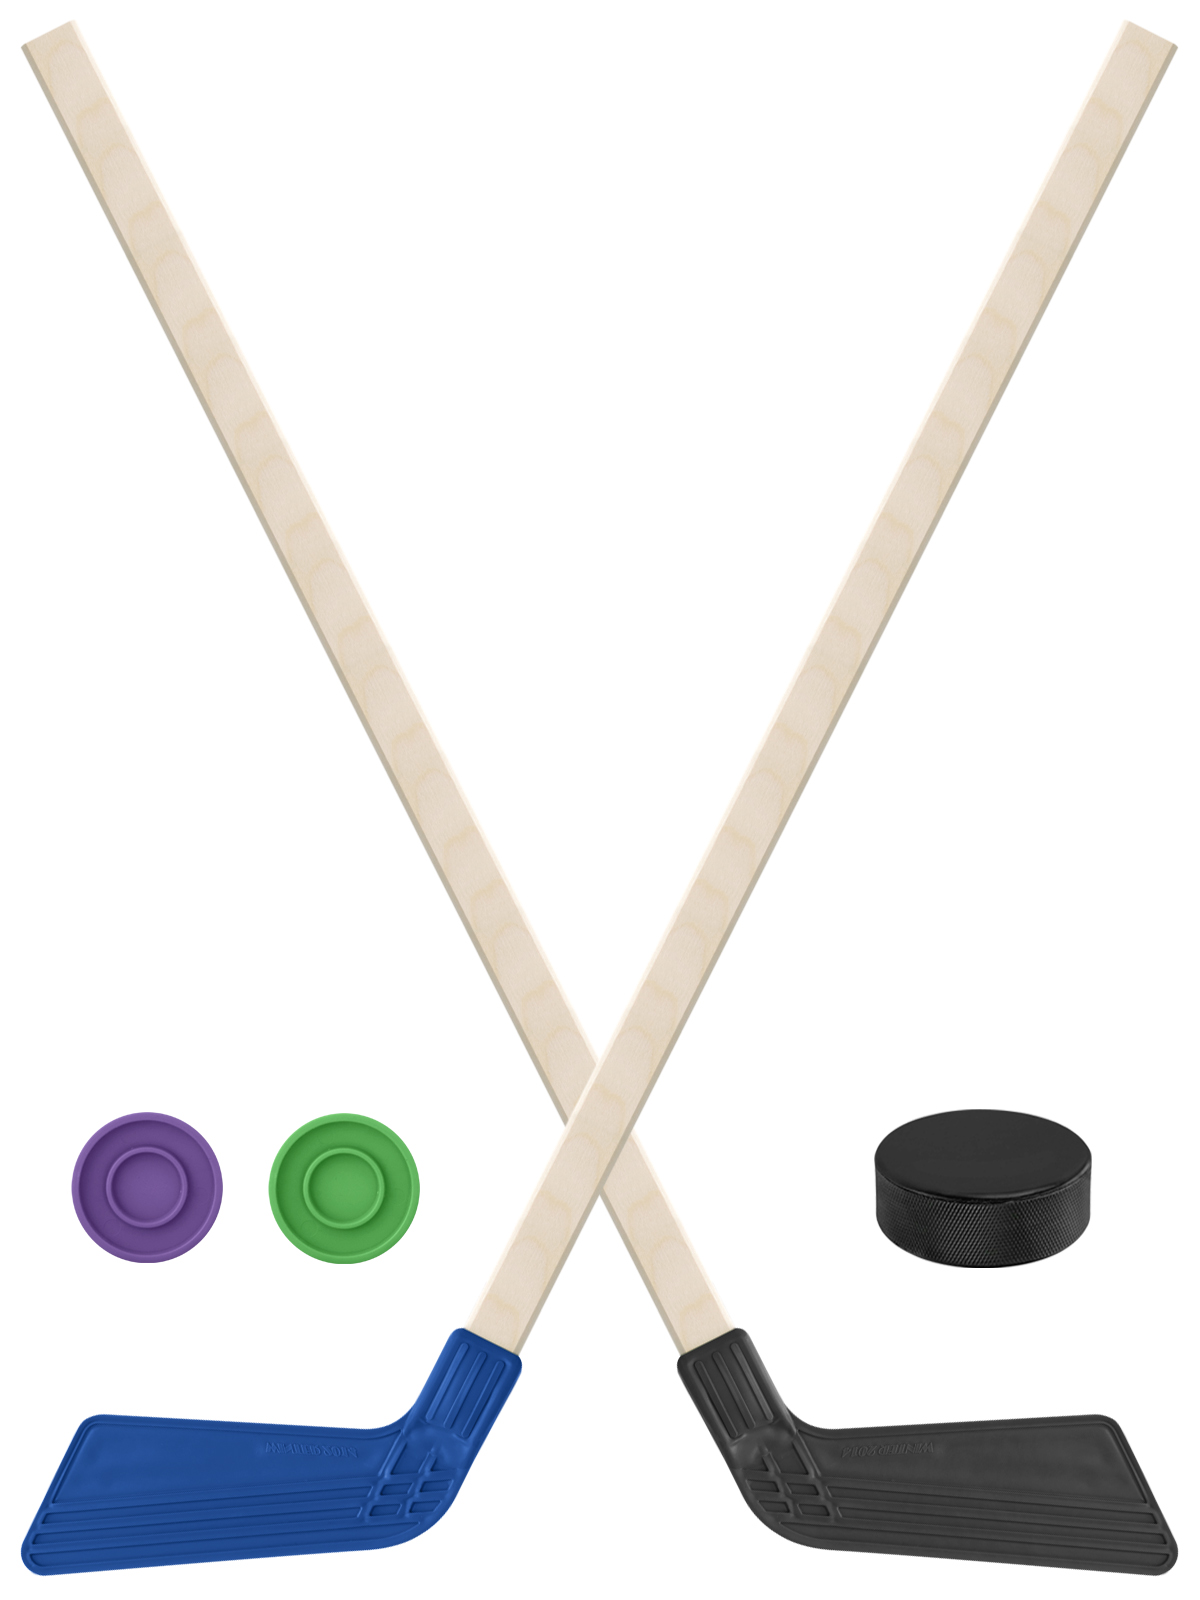 Детский хоккейный набор Задира-плюс Клюшка хоккейная 2шт(син,чёрн)+2шайбы+Шайба 75 мм клюшка флорбольная acito poppis 35 yellow 95 round прямой 3006 009